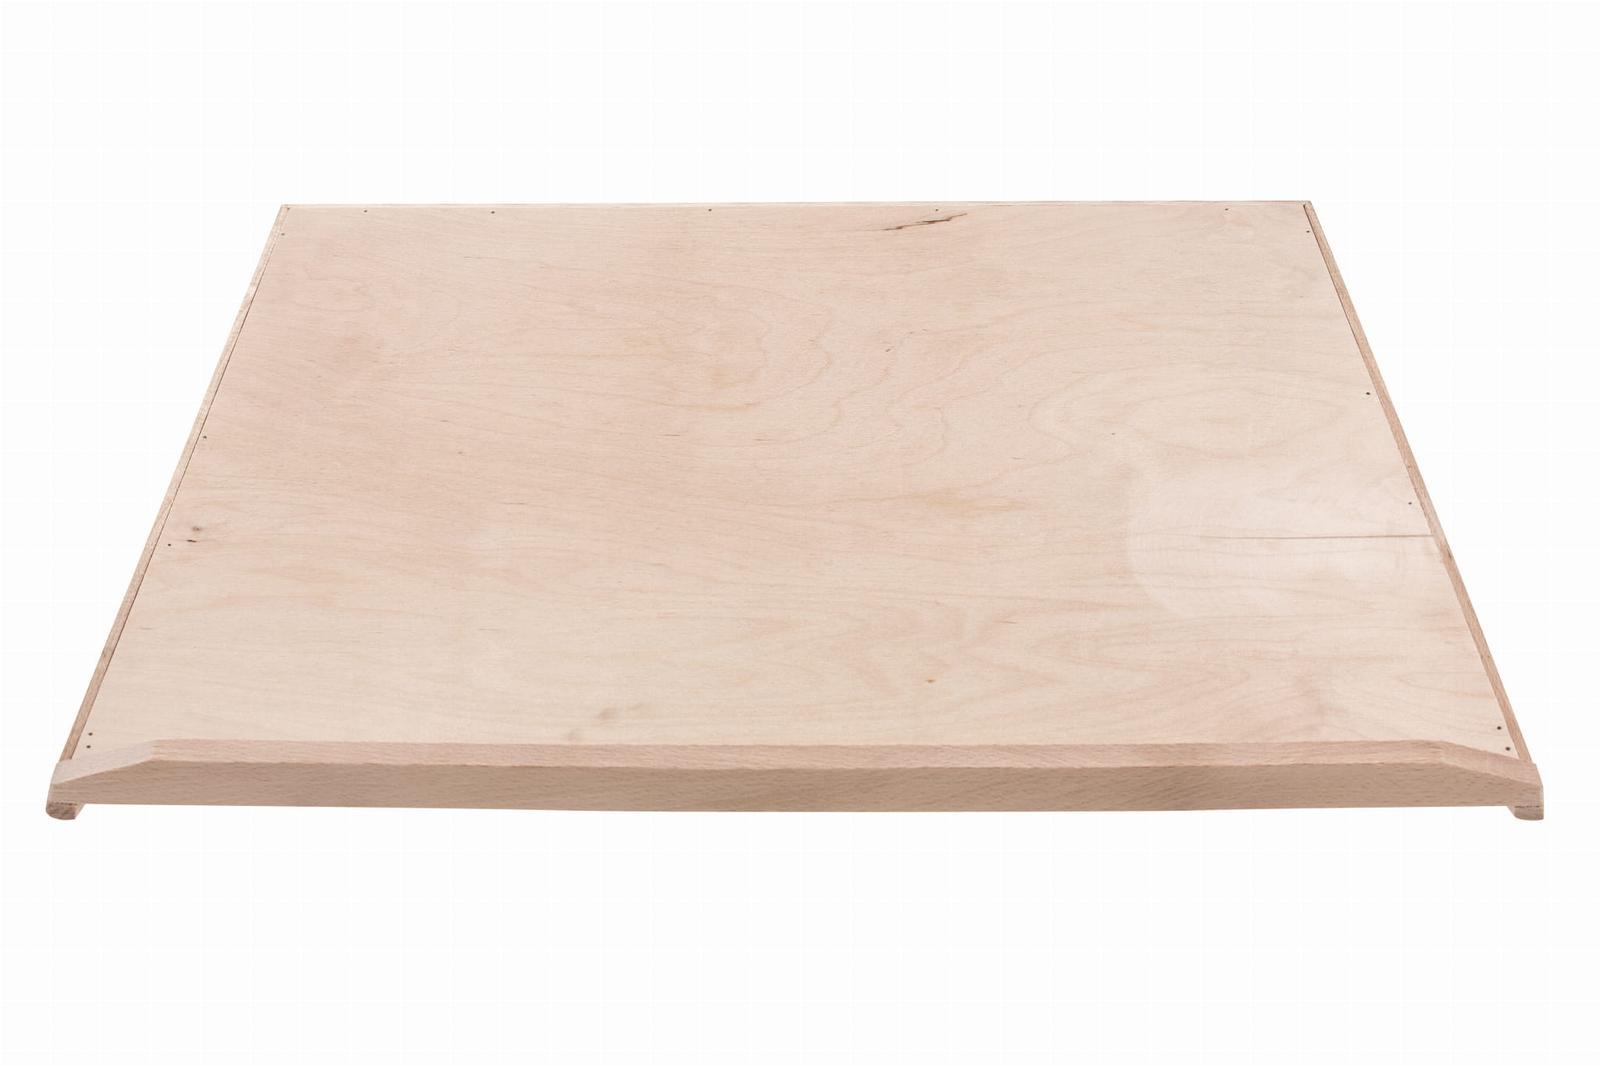 Stolnica kuchenna 50x1,6x70 cm drewniana jednostronna XXL + wałek  nr. 3